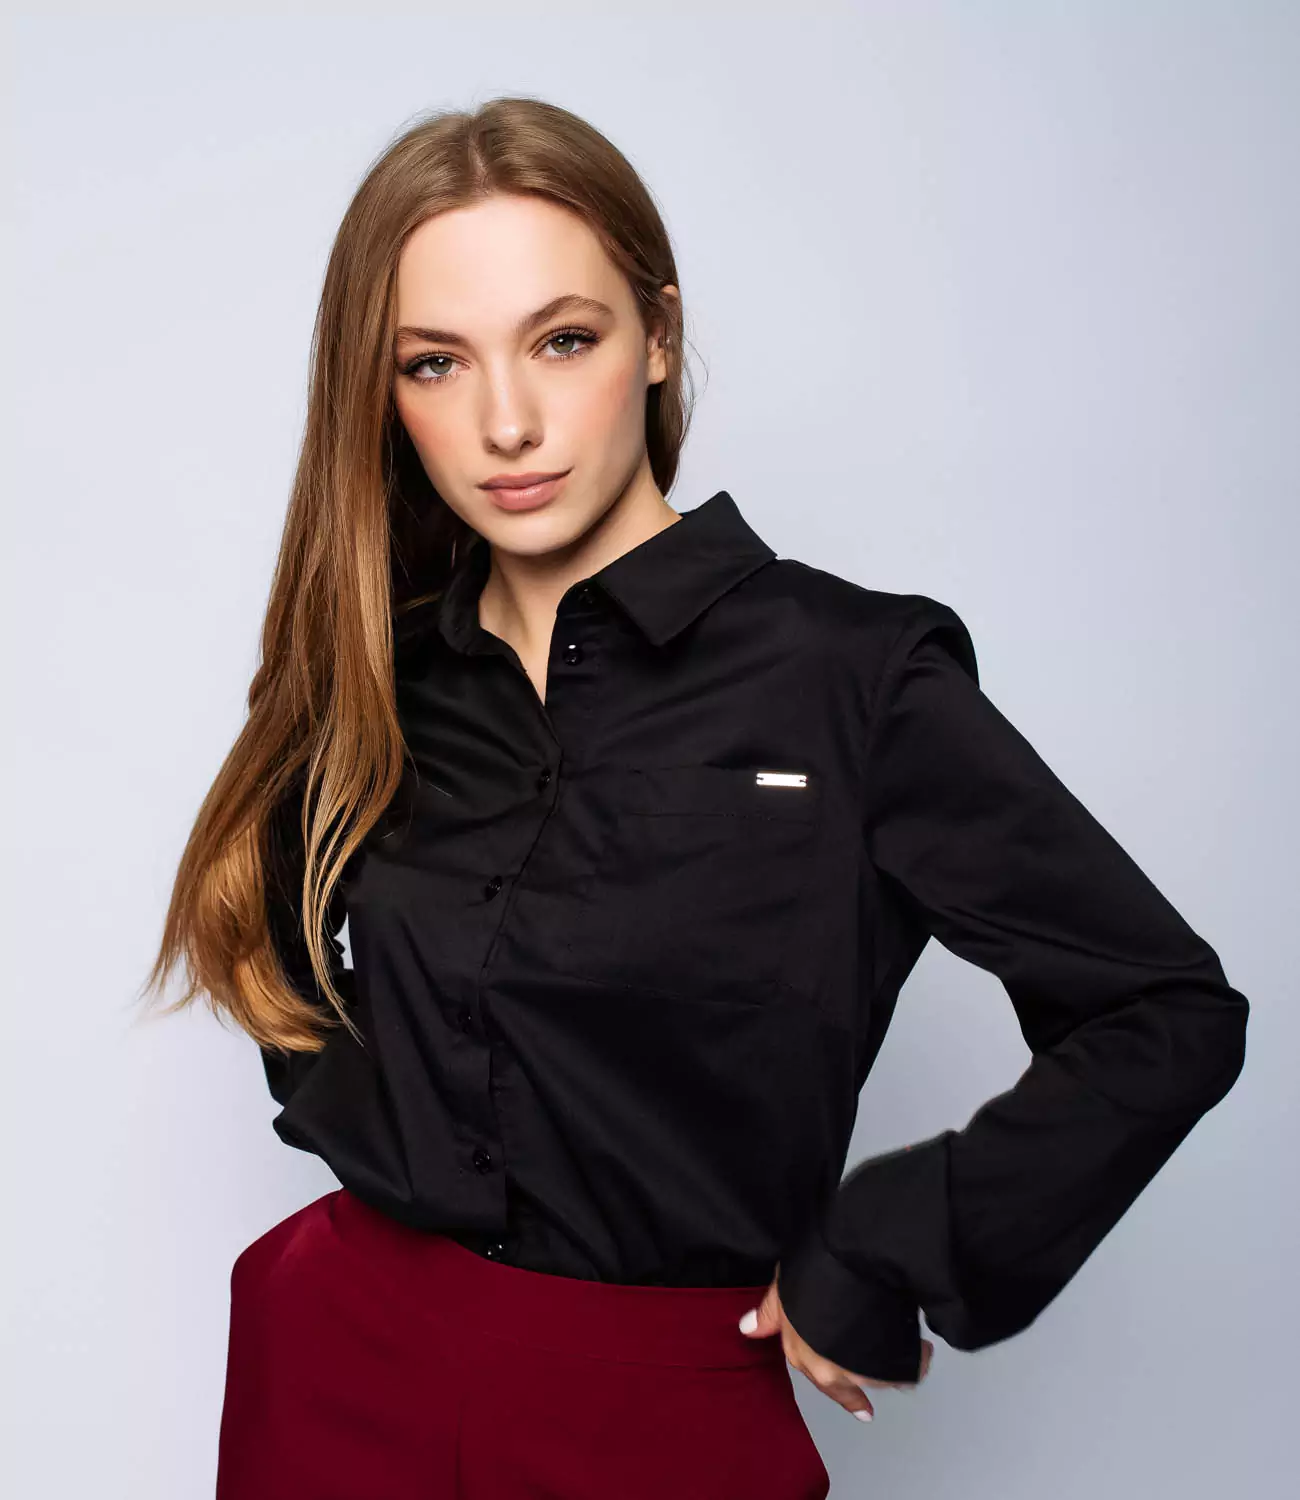 Блузка #1В2104 черного цвета - купить женские блузки оптом